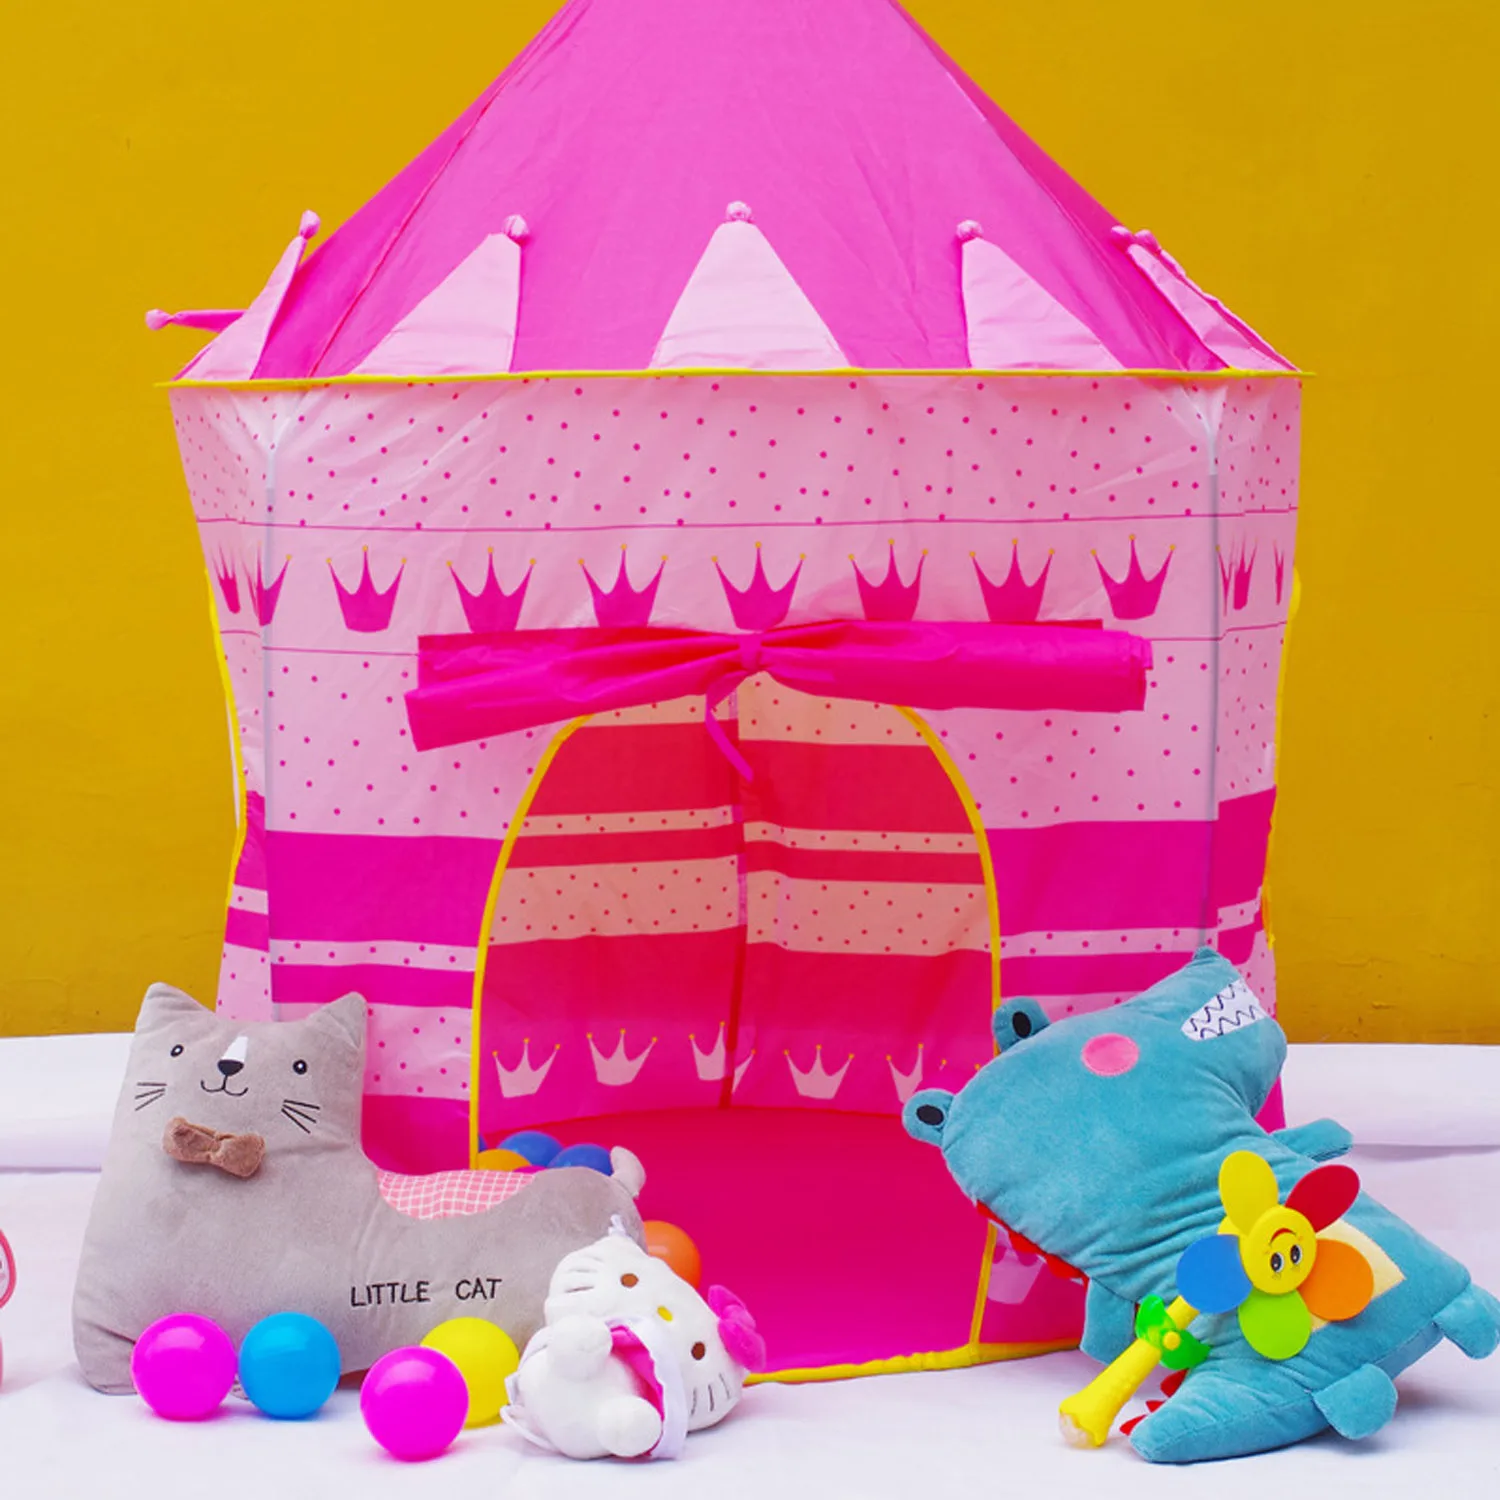 Забавный милый складной всплывающий детский игровой палаточный домик для игр замок с чехлом для переноски для малышей детей Крытый Открытый игрушки